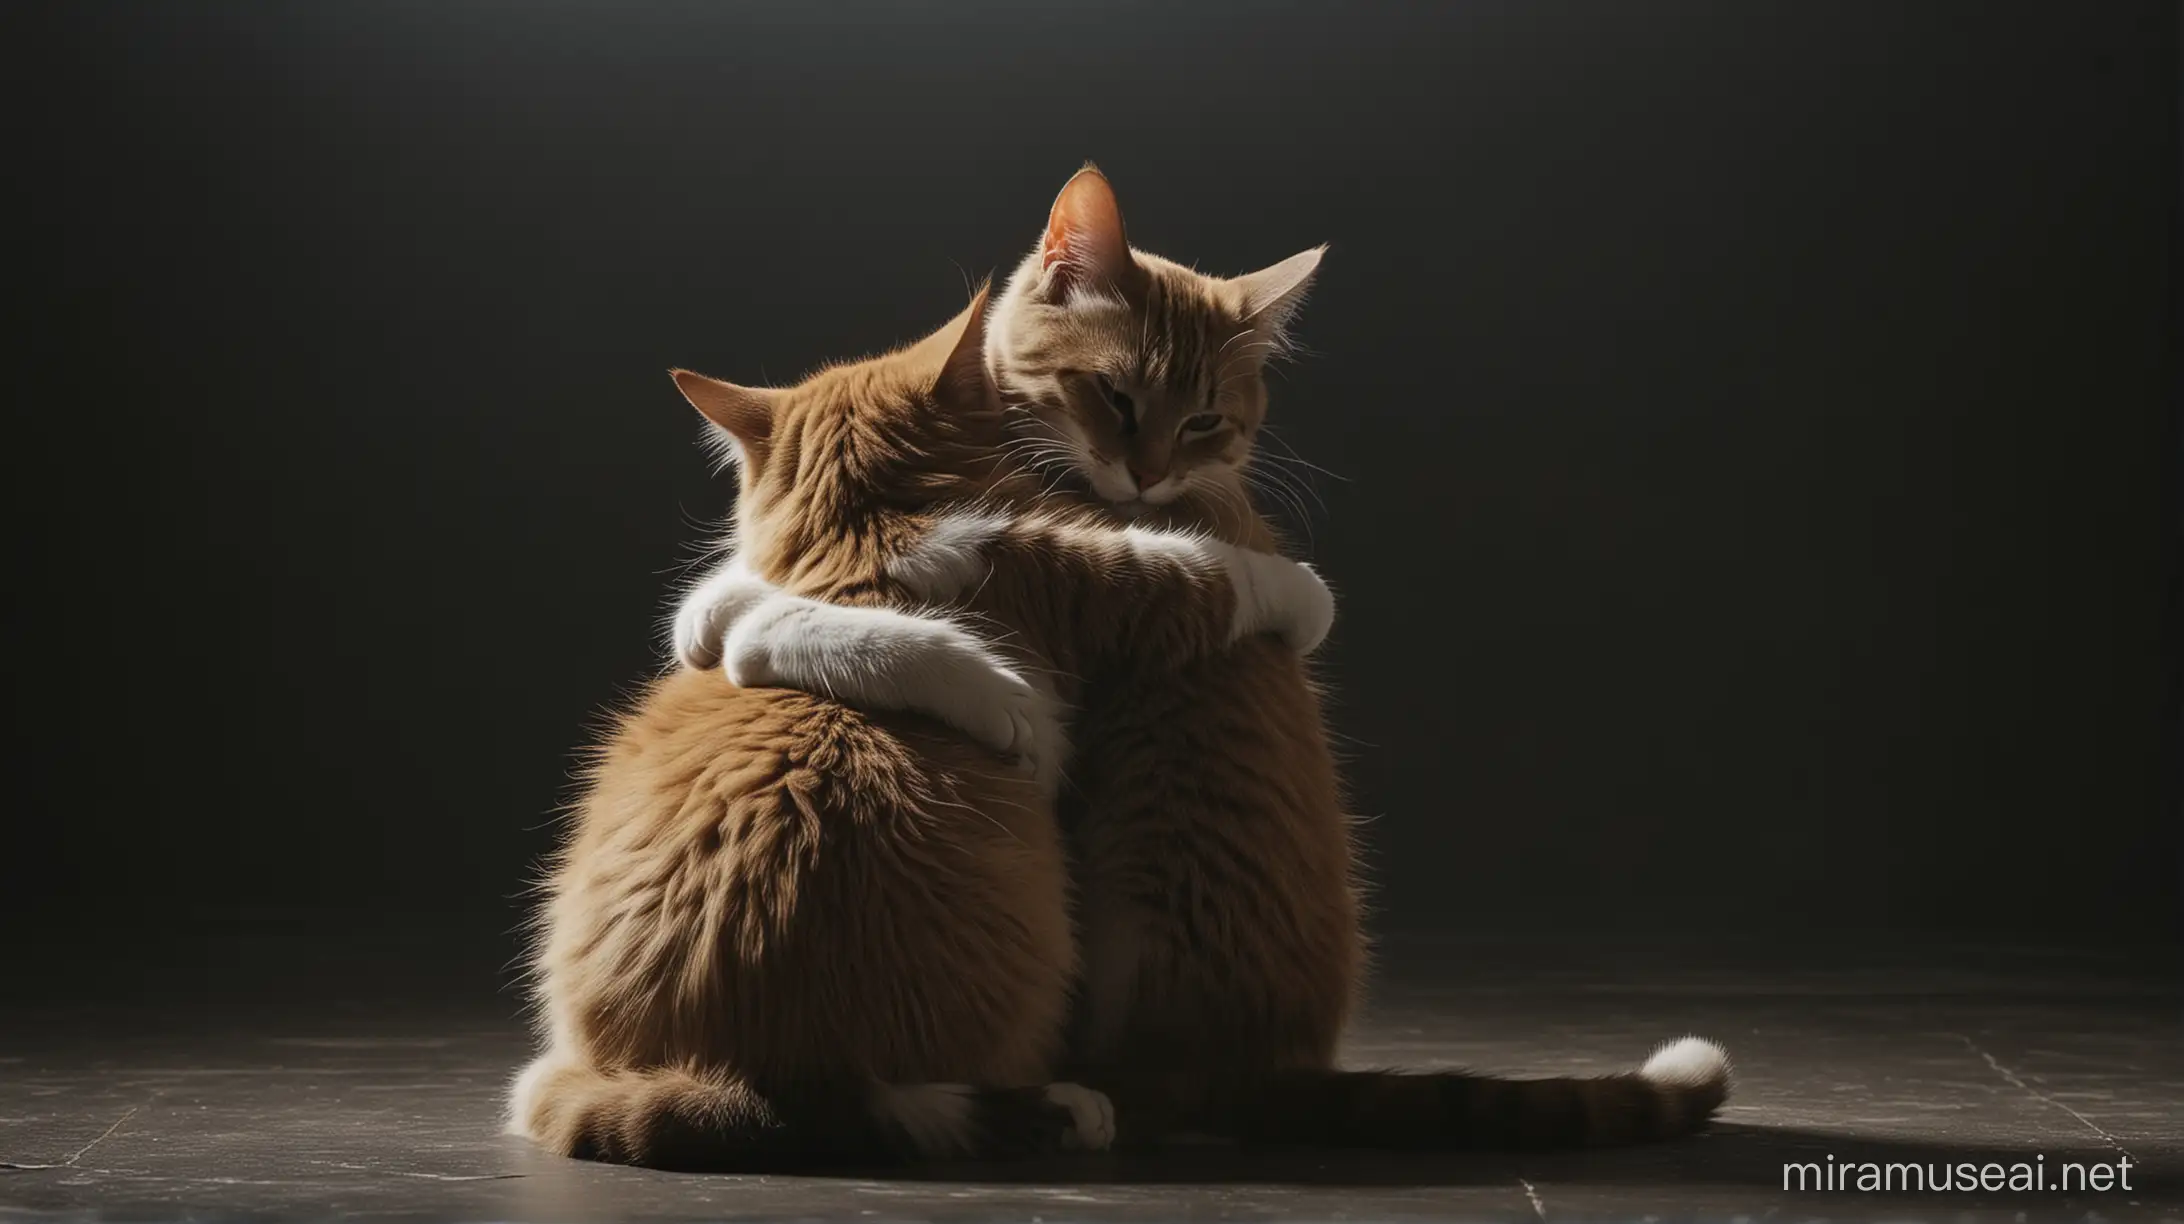 cats hugging facing backwards in a dark room